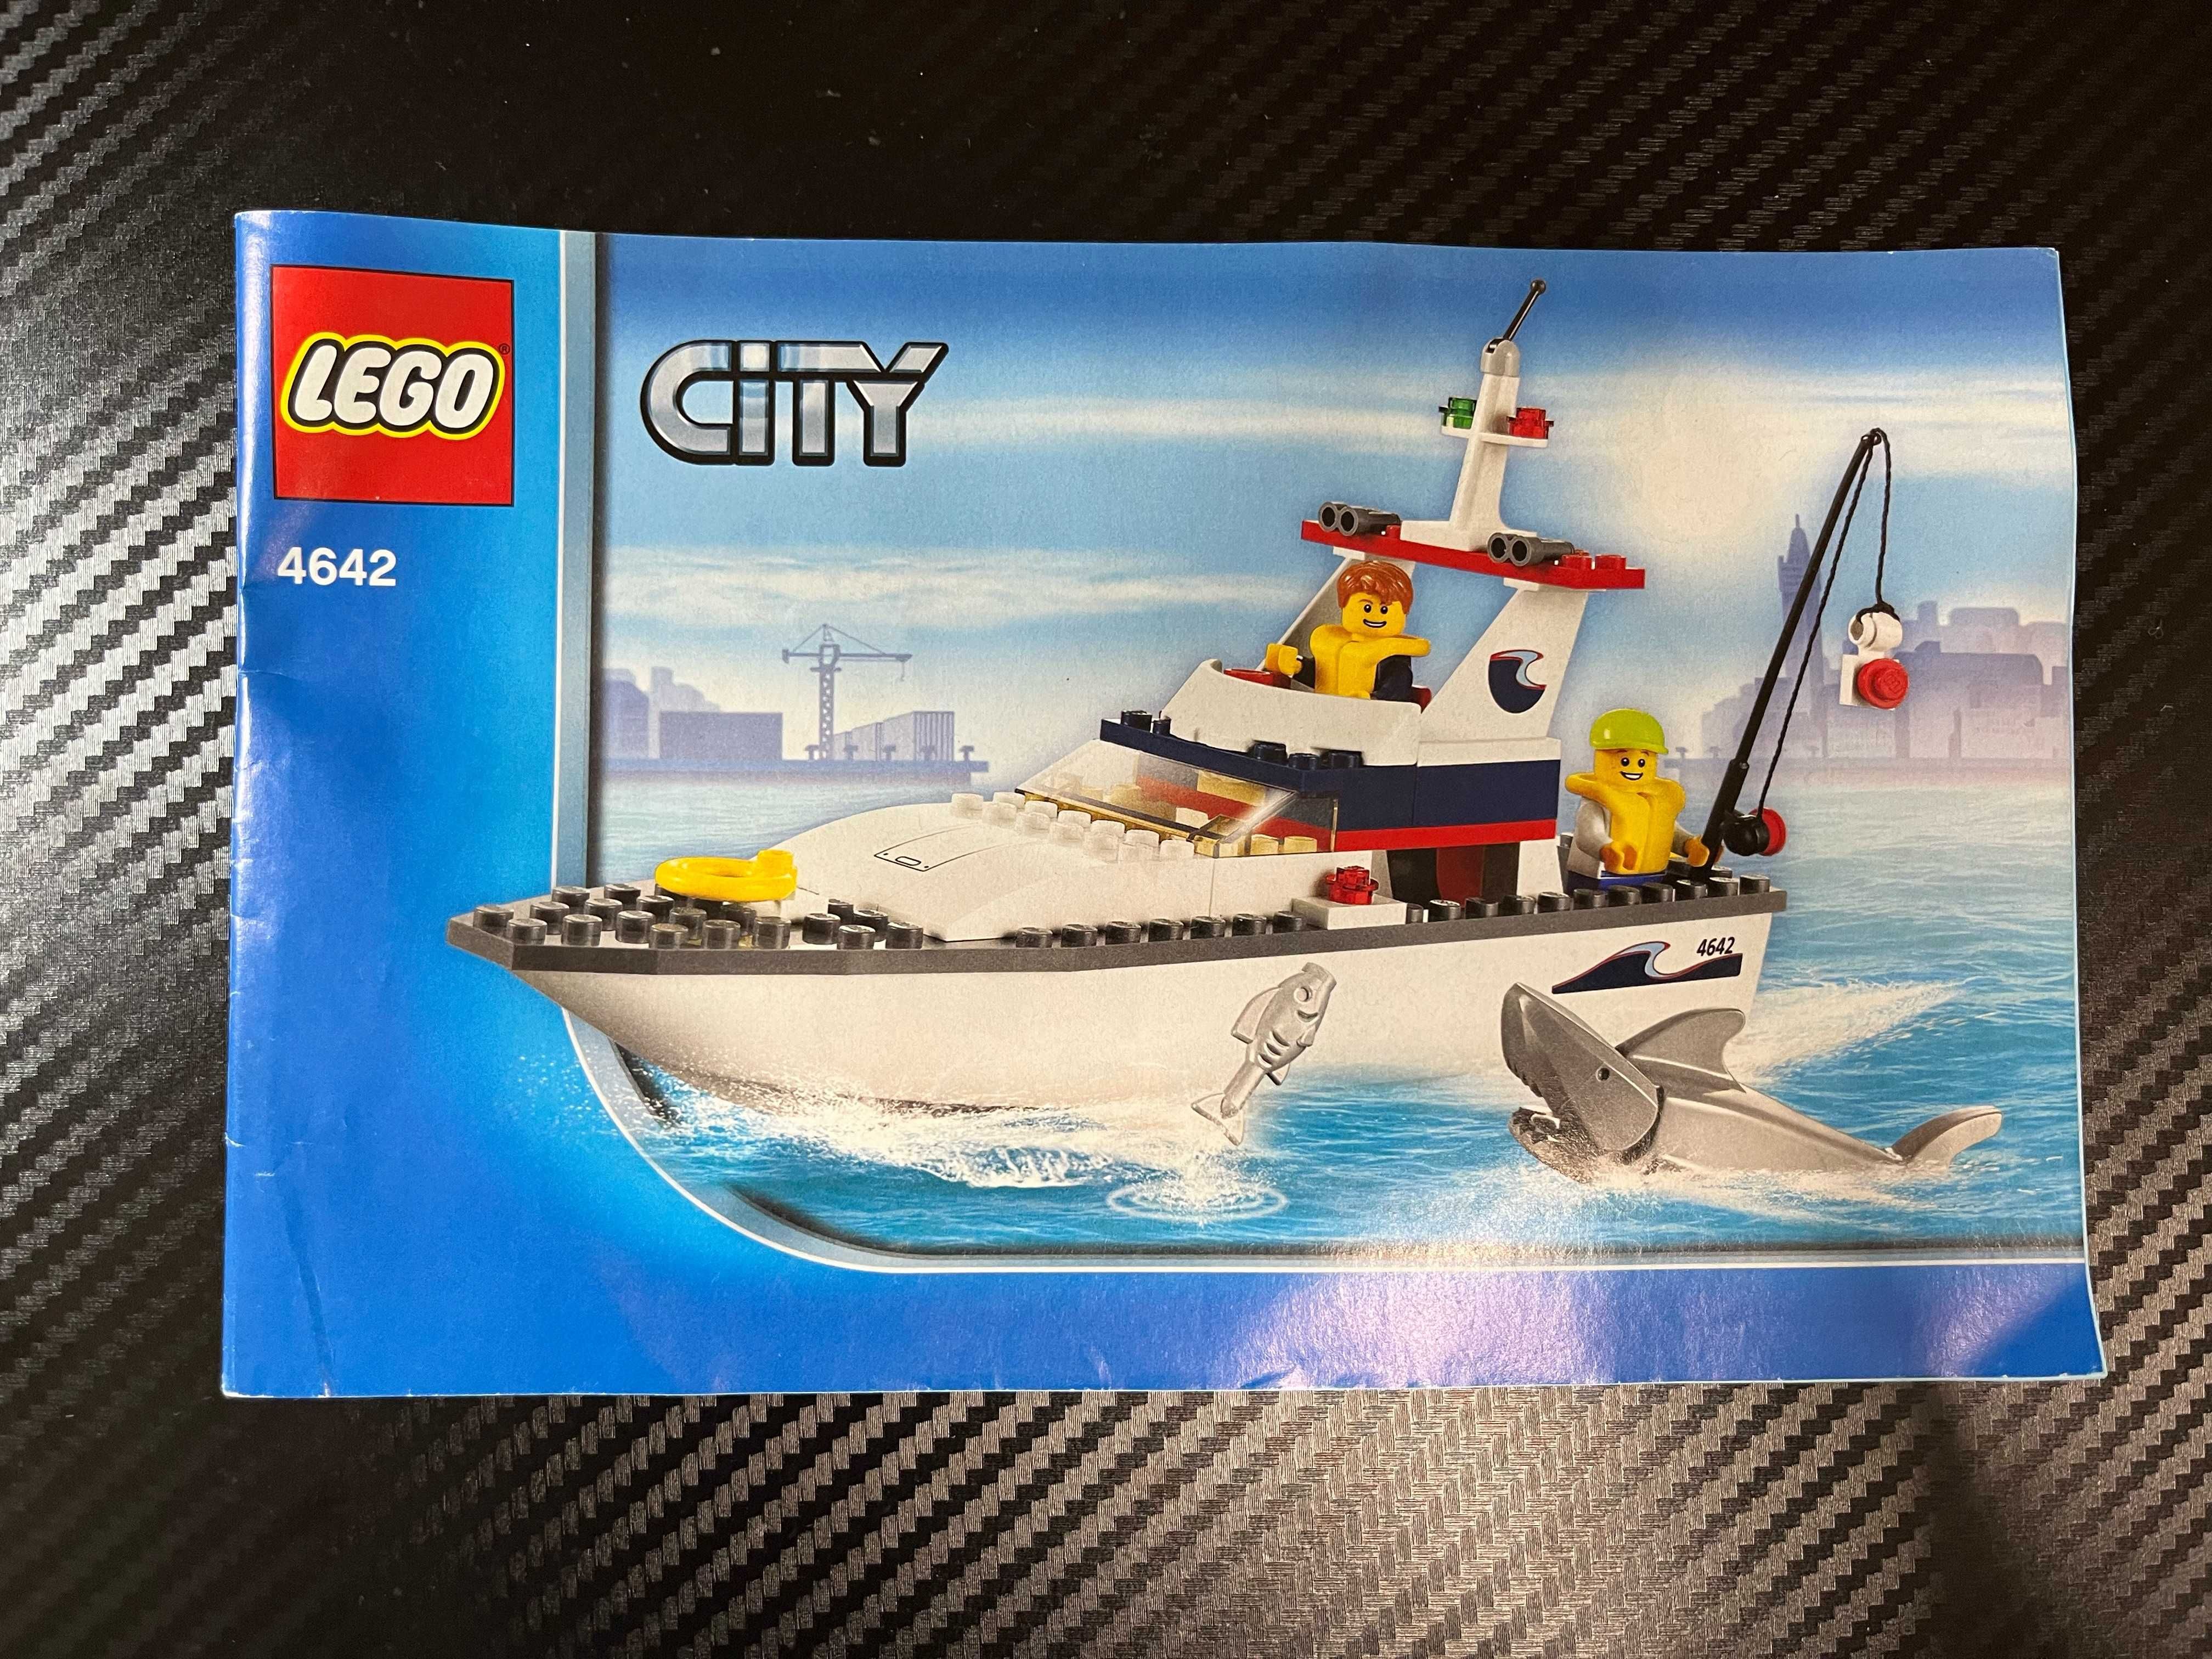 Lego City 4642, Jacht motorowy - brakuje jednego elementów